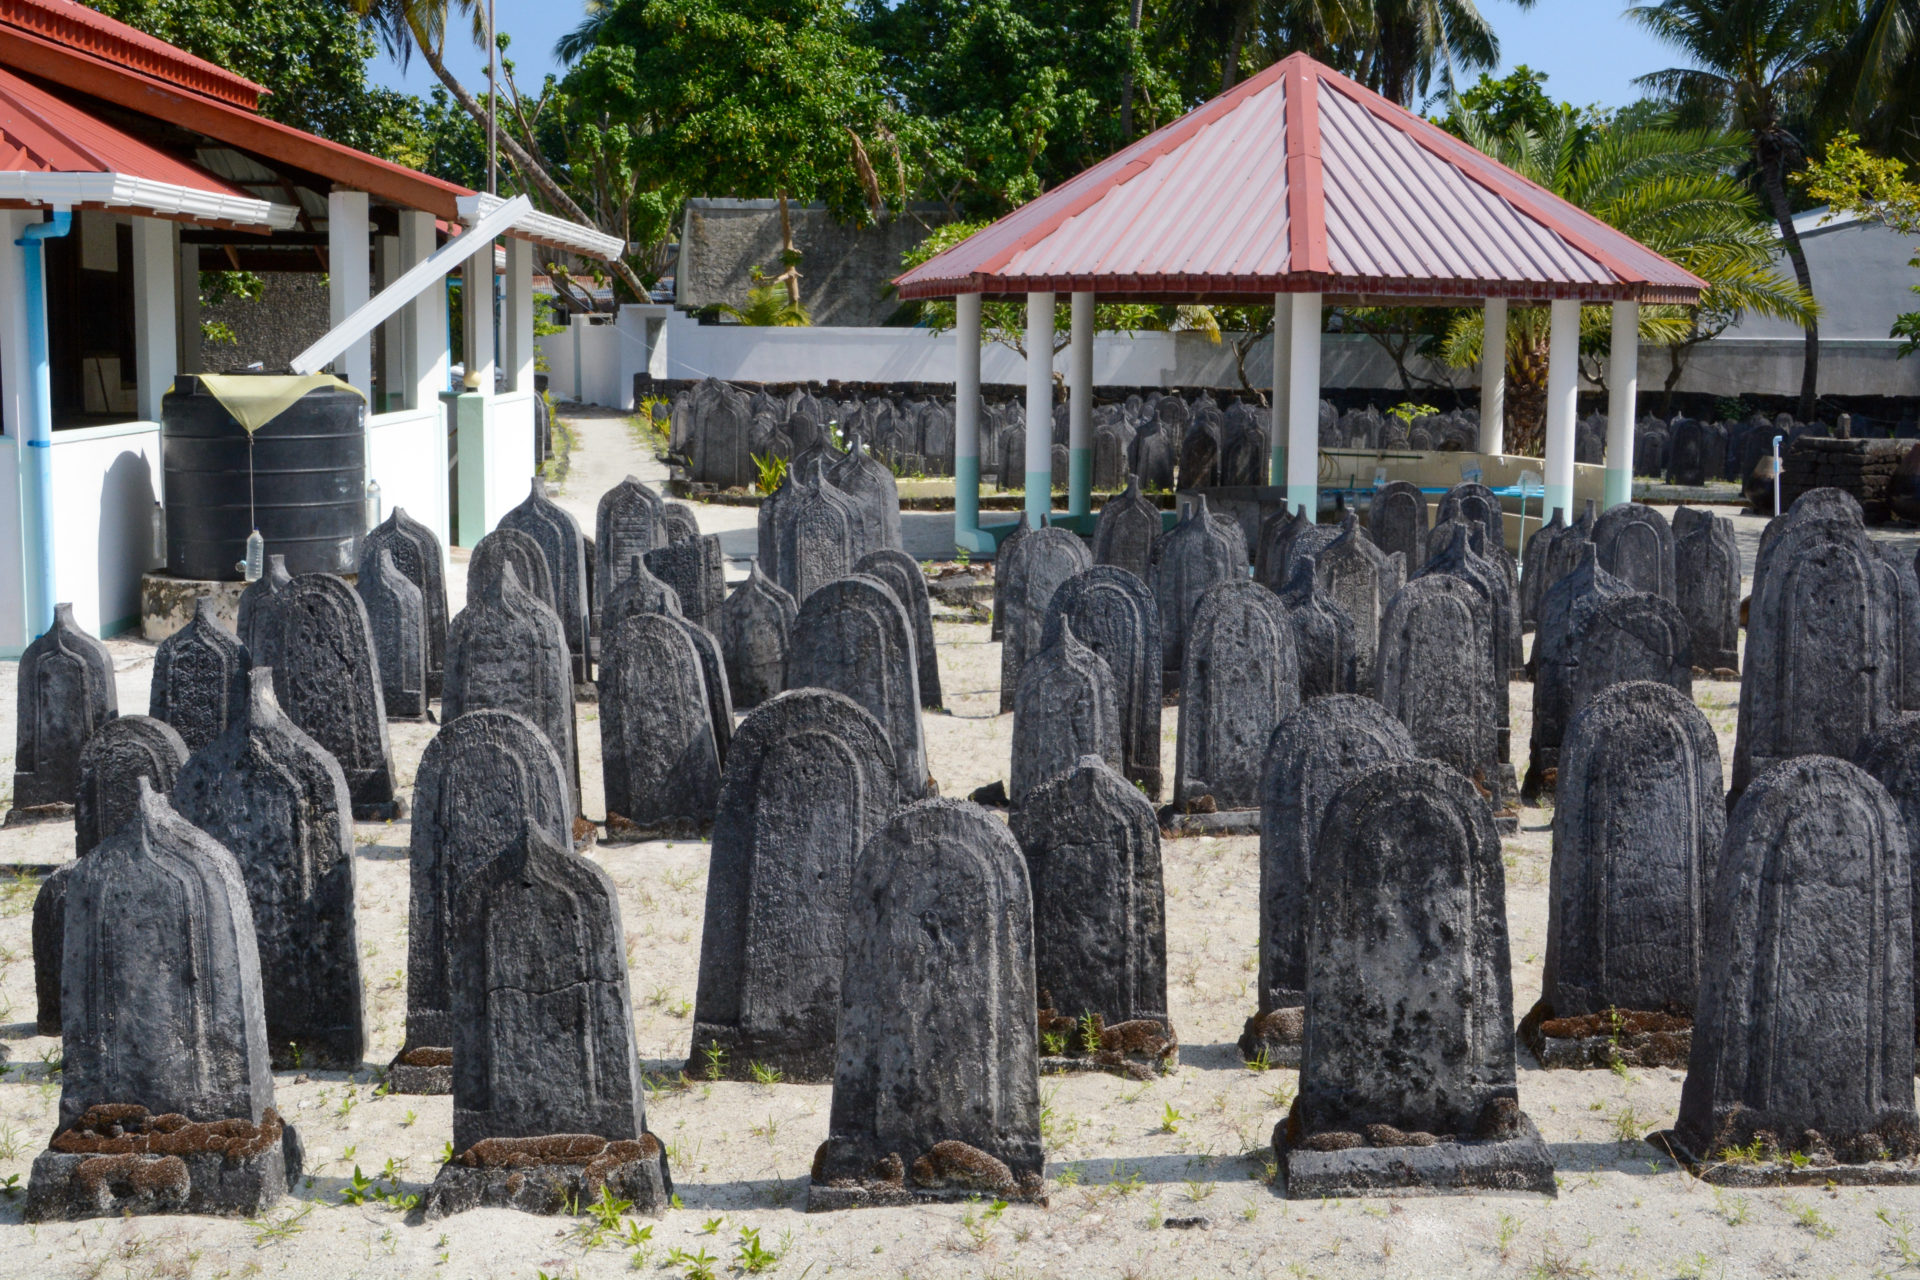 Friedhof auf Fenfushee Island mit jahrhundertelaten Grabsteinen